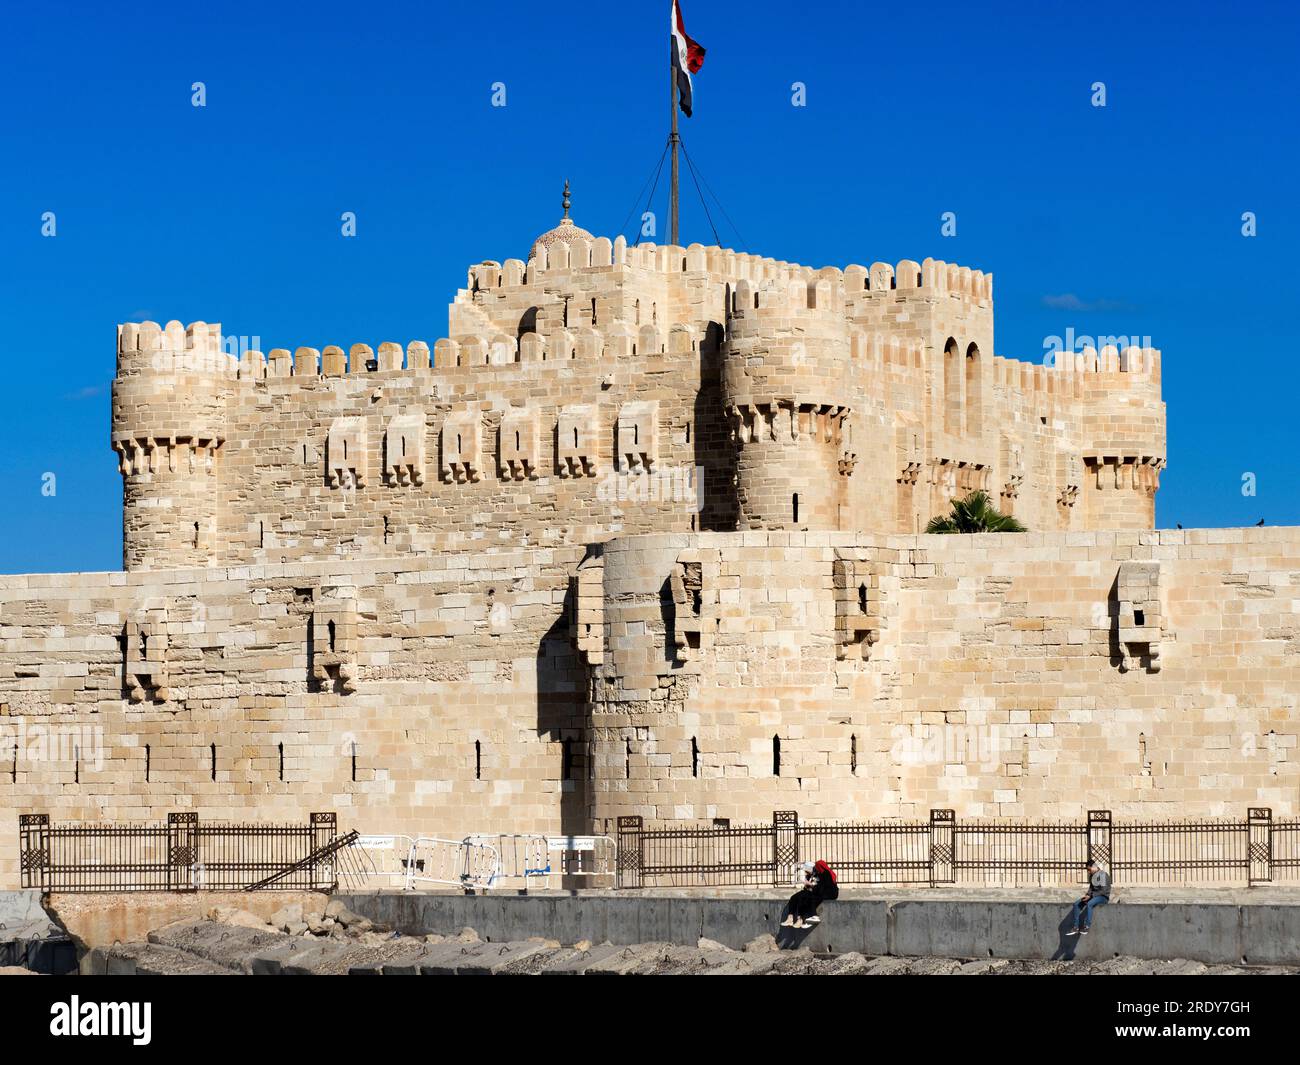 Die Zitadelle von Qaitbay befindet sich an der nördlichen Spitze der Insel Pharos an der Mündung des östlichen Hafens von Alexandria und ist eine Festung aus dem 15. Jahrhundert Stockfoto